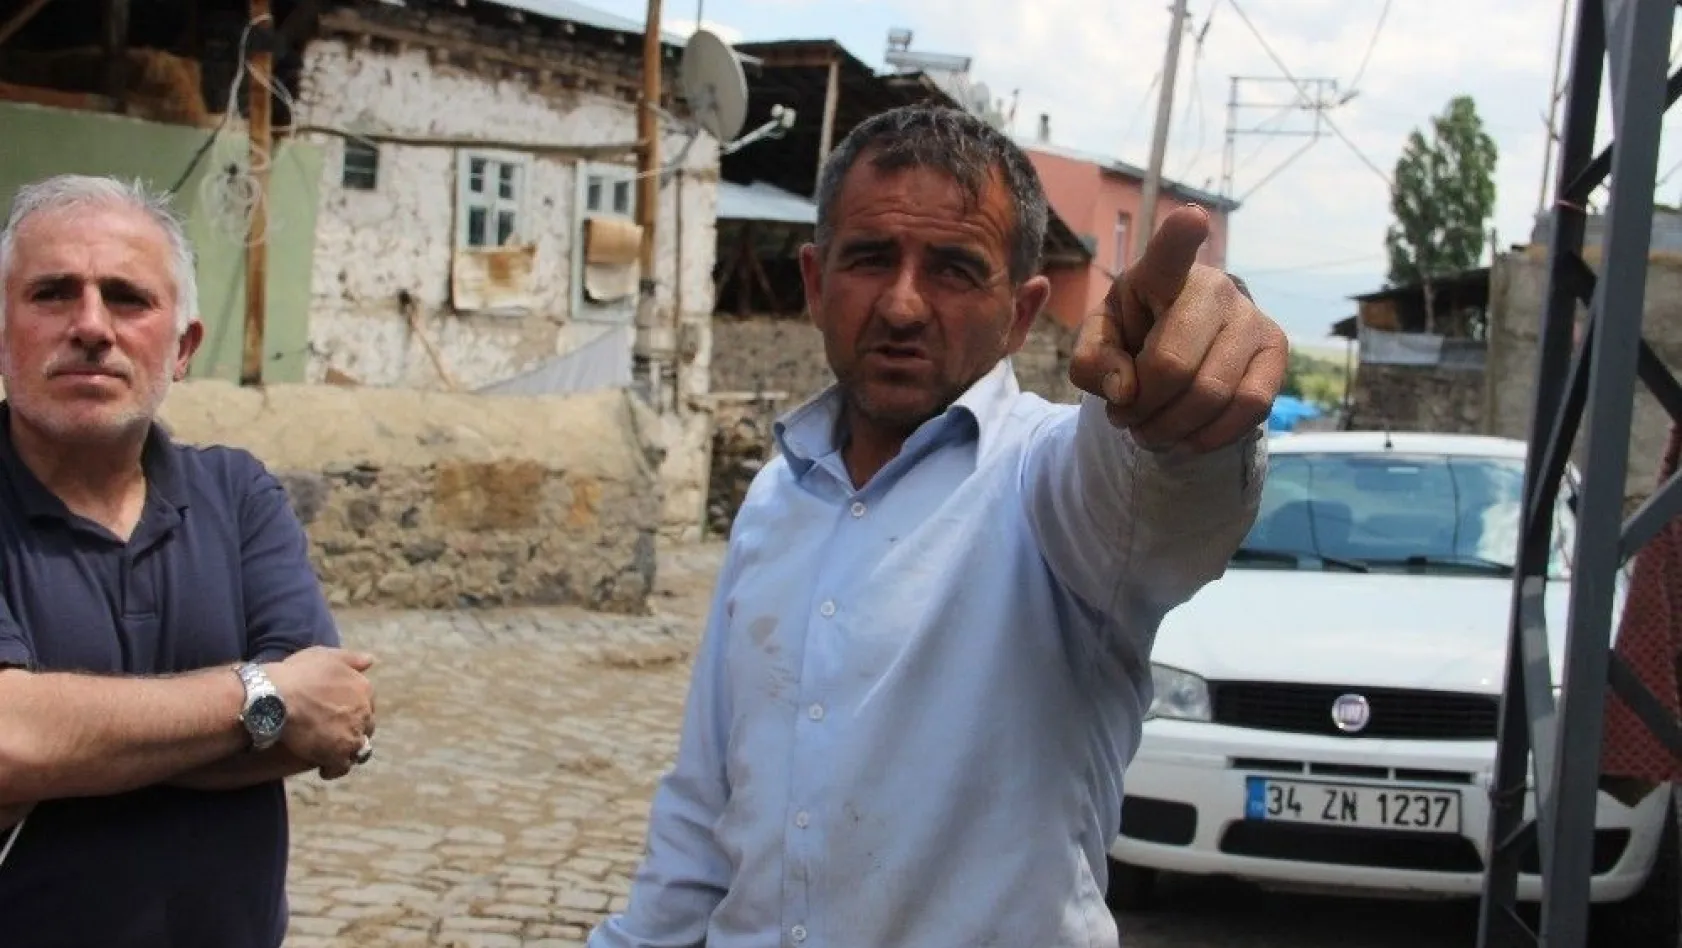 Erzurum'da aynı köyde ikinci ayı saldırısı
